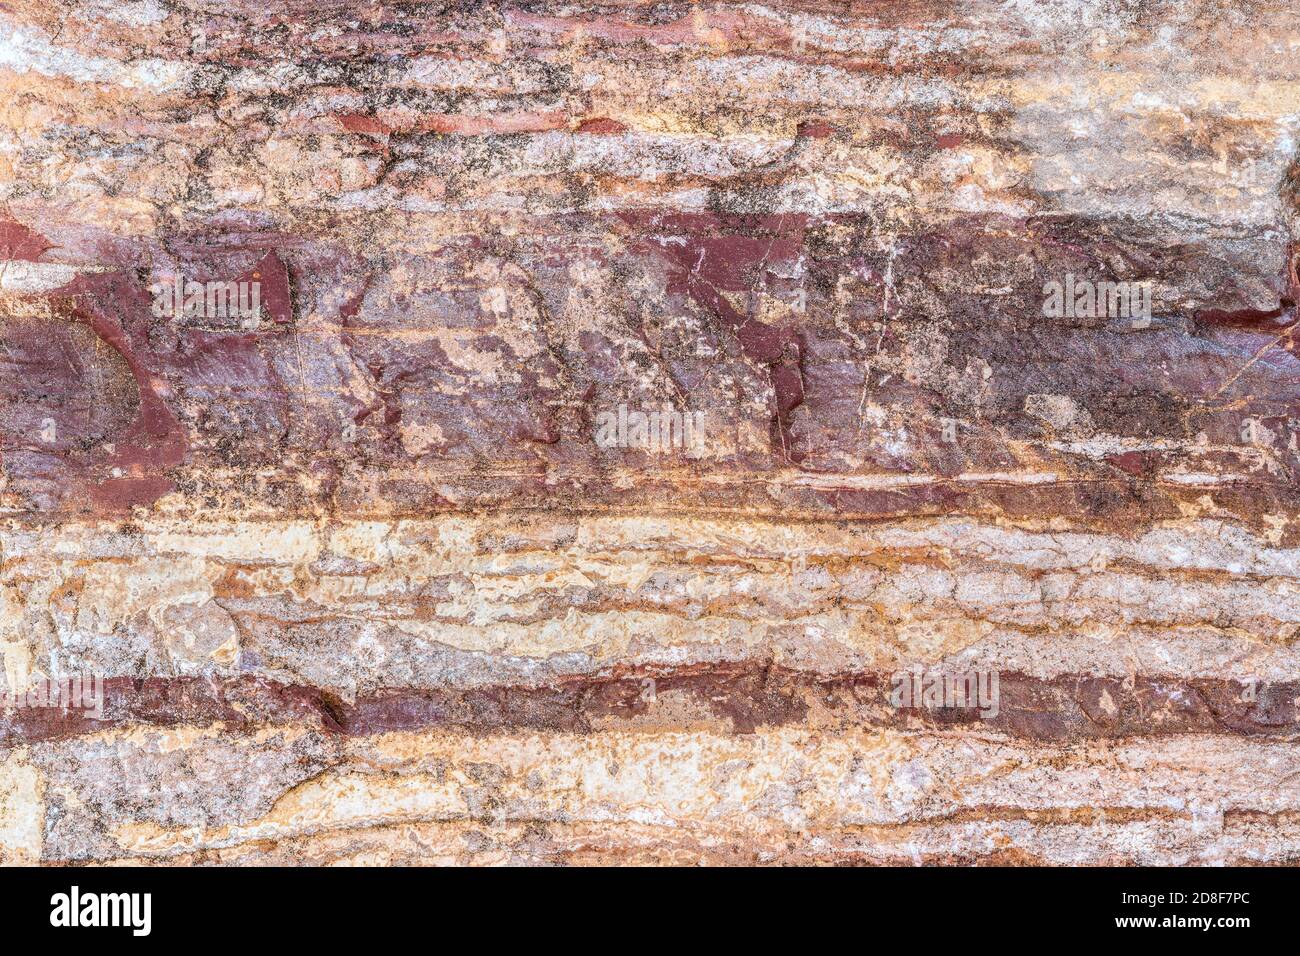 Präkambrisches metamorphes Gestein, Lake Superior Region, W. Upper Peninsula Michigan, USA, 4.5 bis 5 Milliarden Jahre alt, von Dominique Braud/Dembinsky Foto A Stockfoto